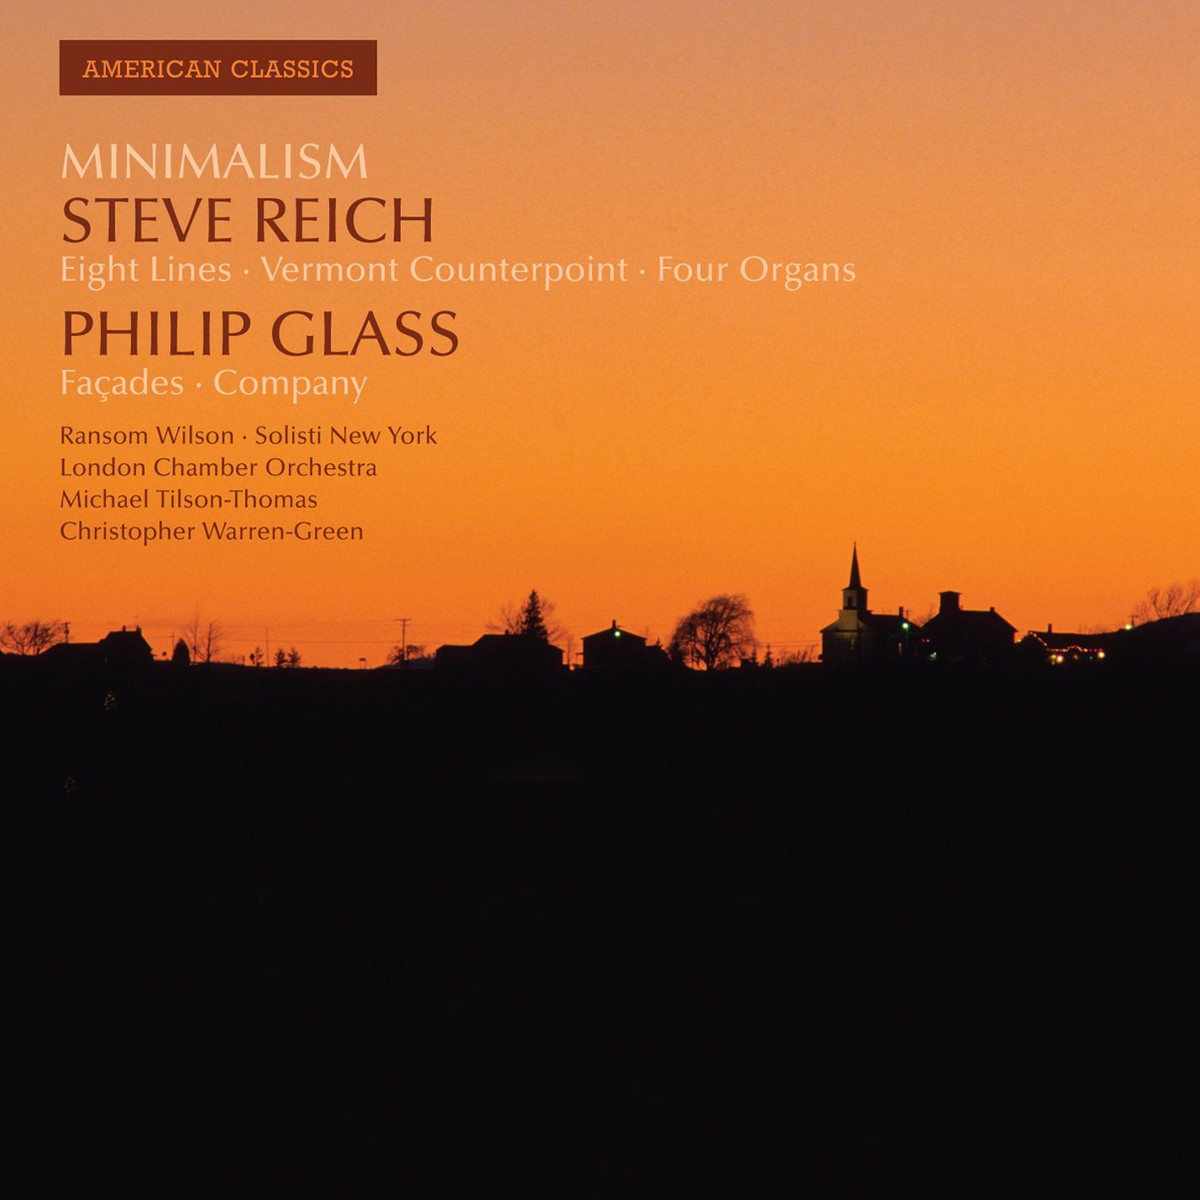 American Classics: Steve Reich & Philip Glass